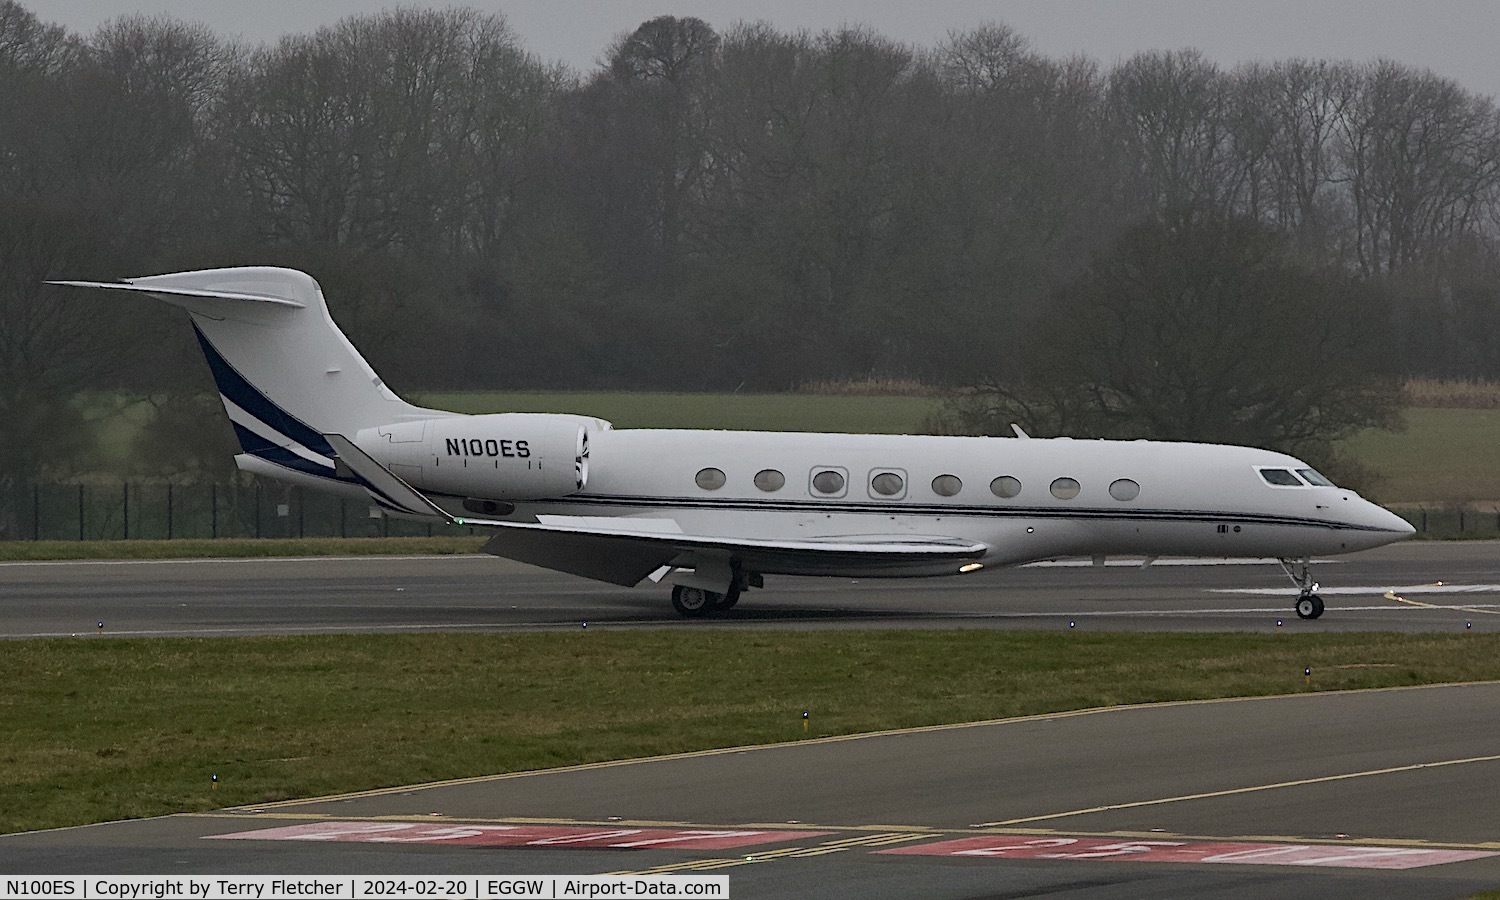 N100ES, 2011 Gulfstream G-VI (G650ER) C/N 6014, At Luton Airport